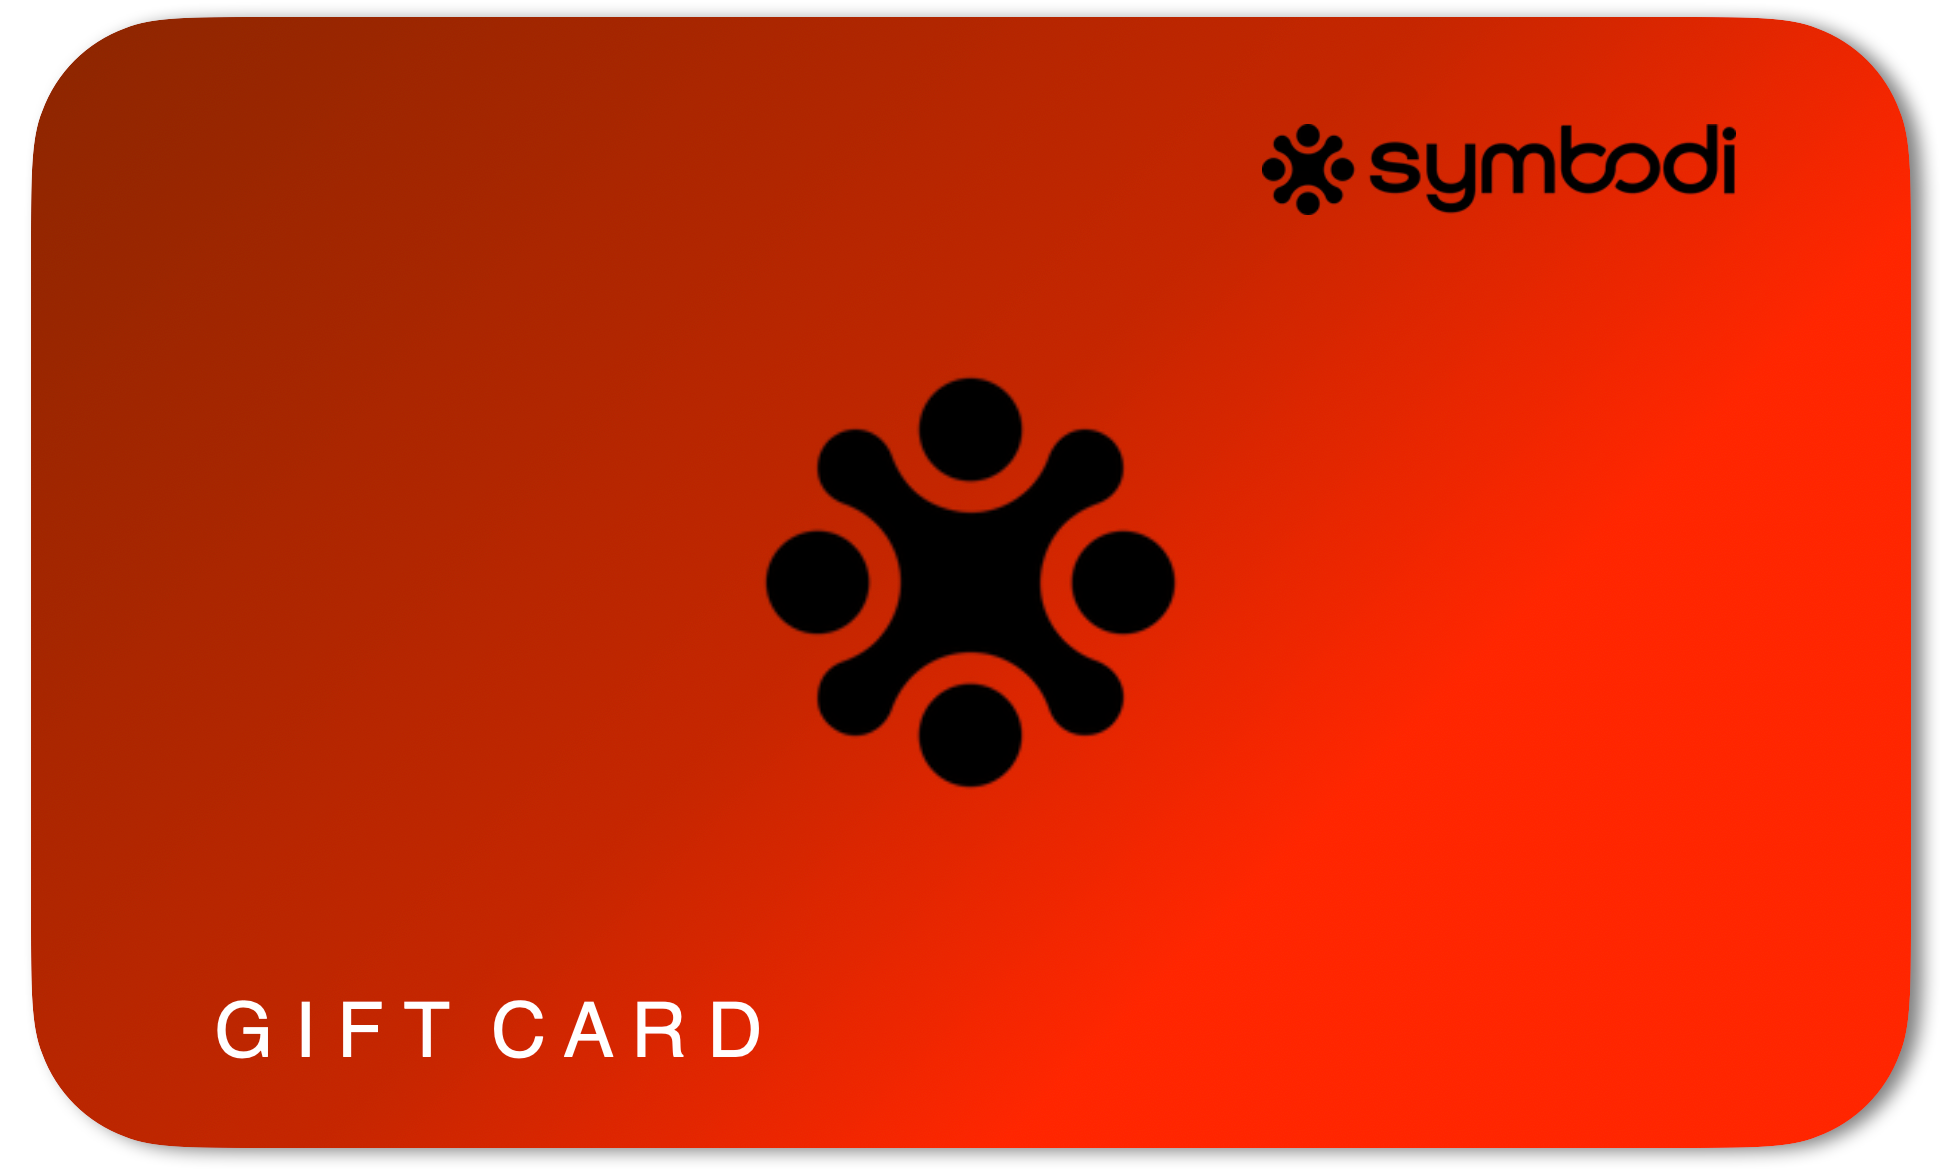 Symbodi Holiday Gift Cards